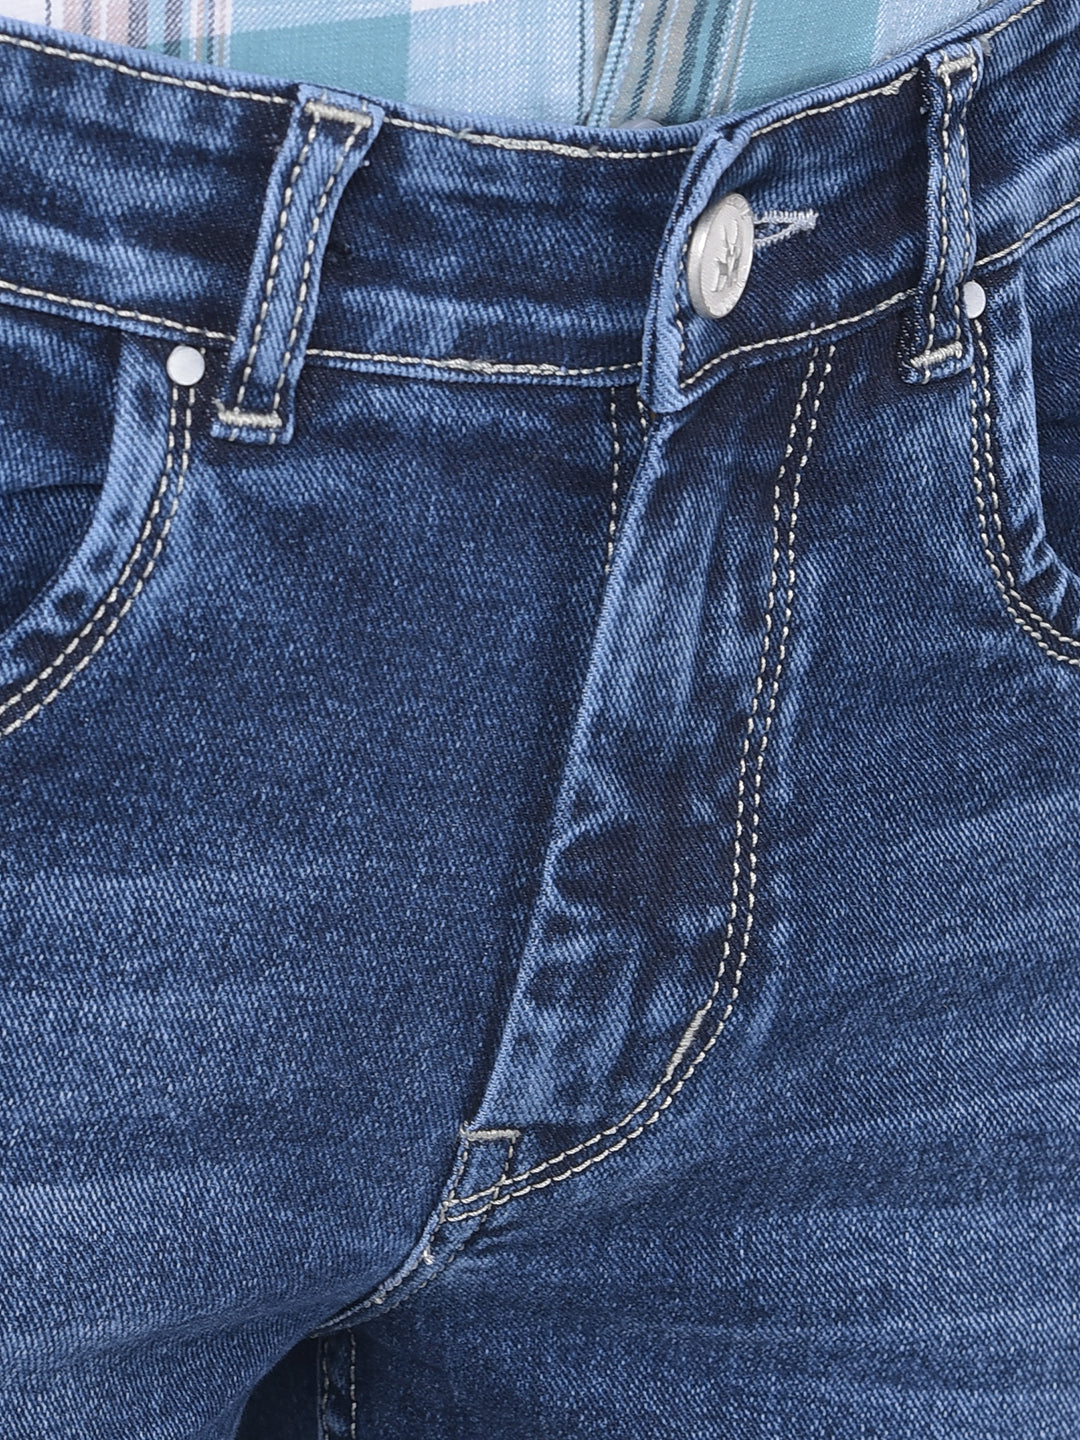 Blue Jeans-Men Jeans-Crimsoune Club